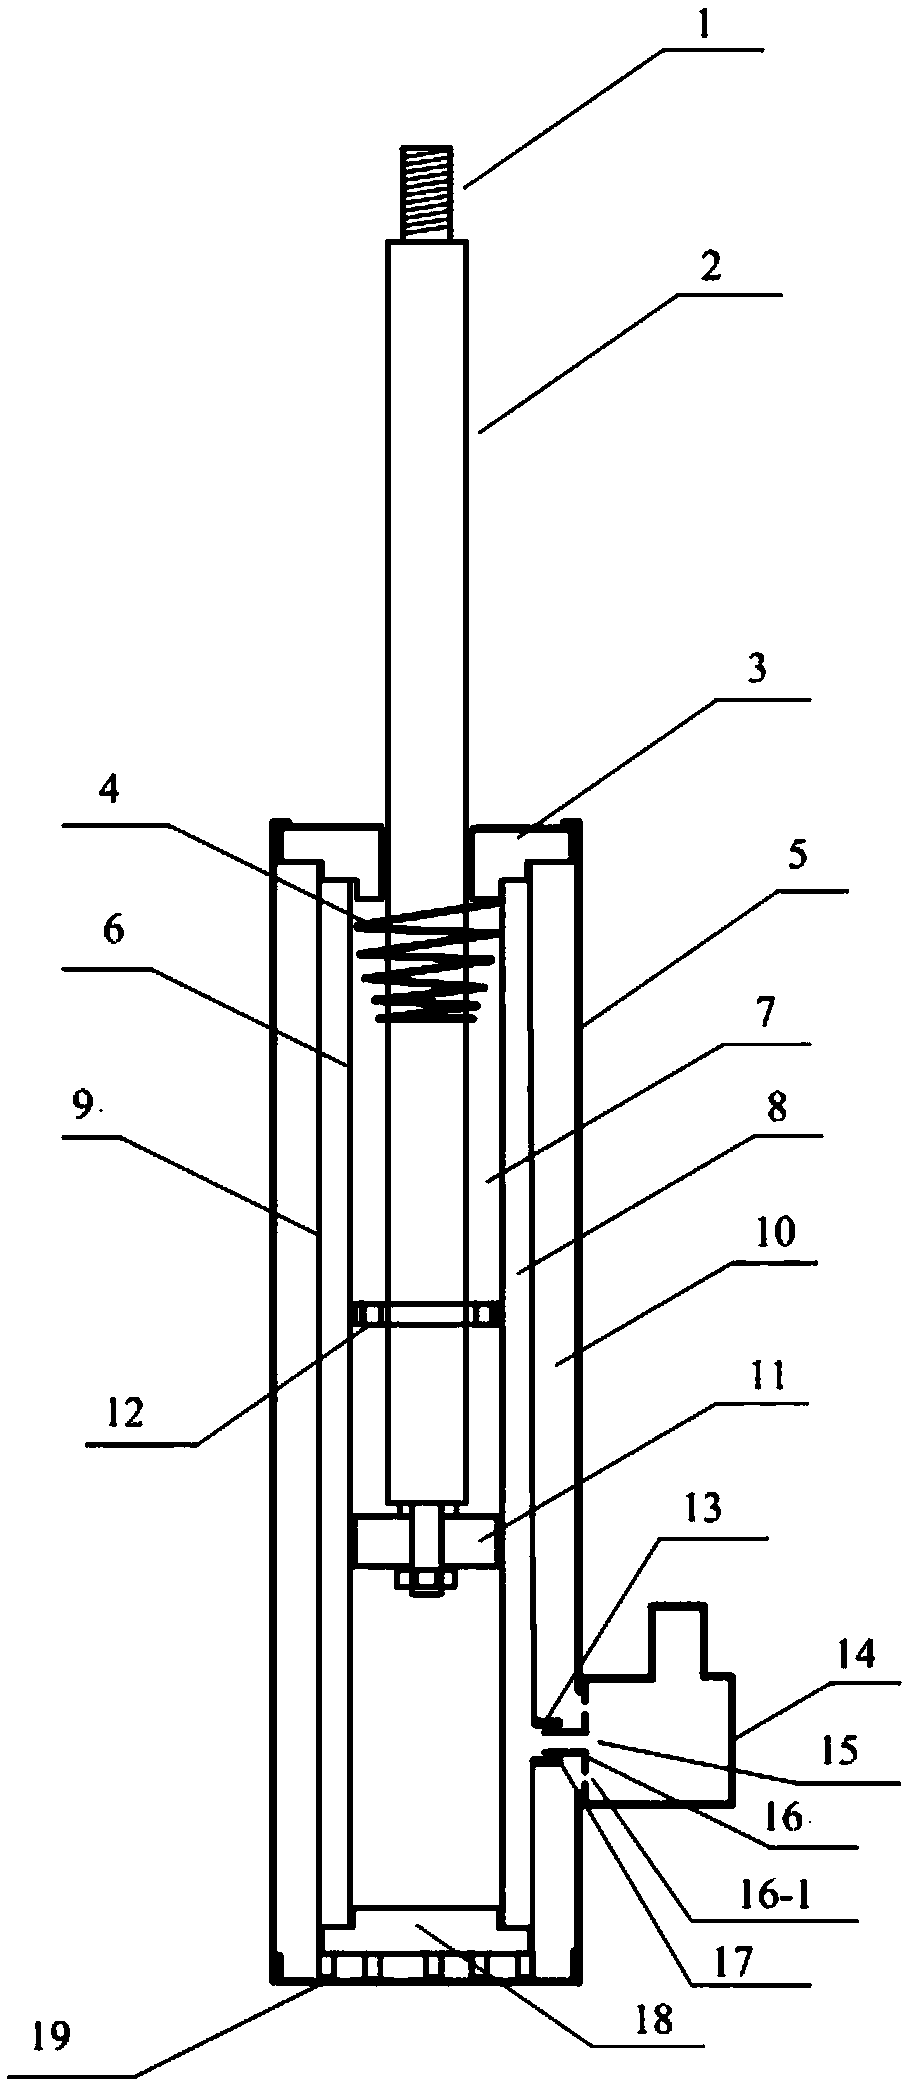 External piezoelectric ceramic variable damping damper